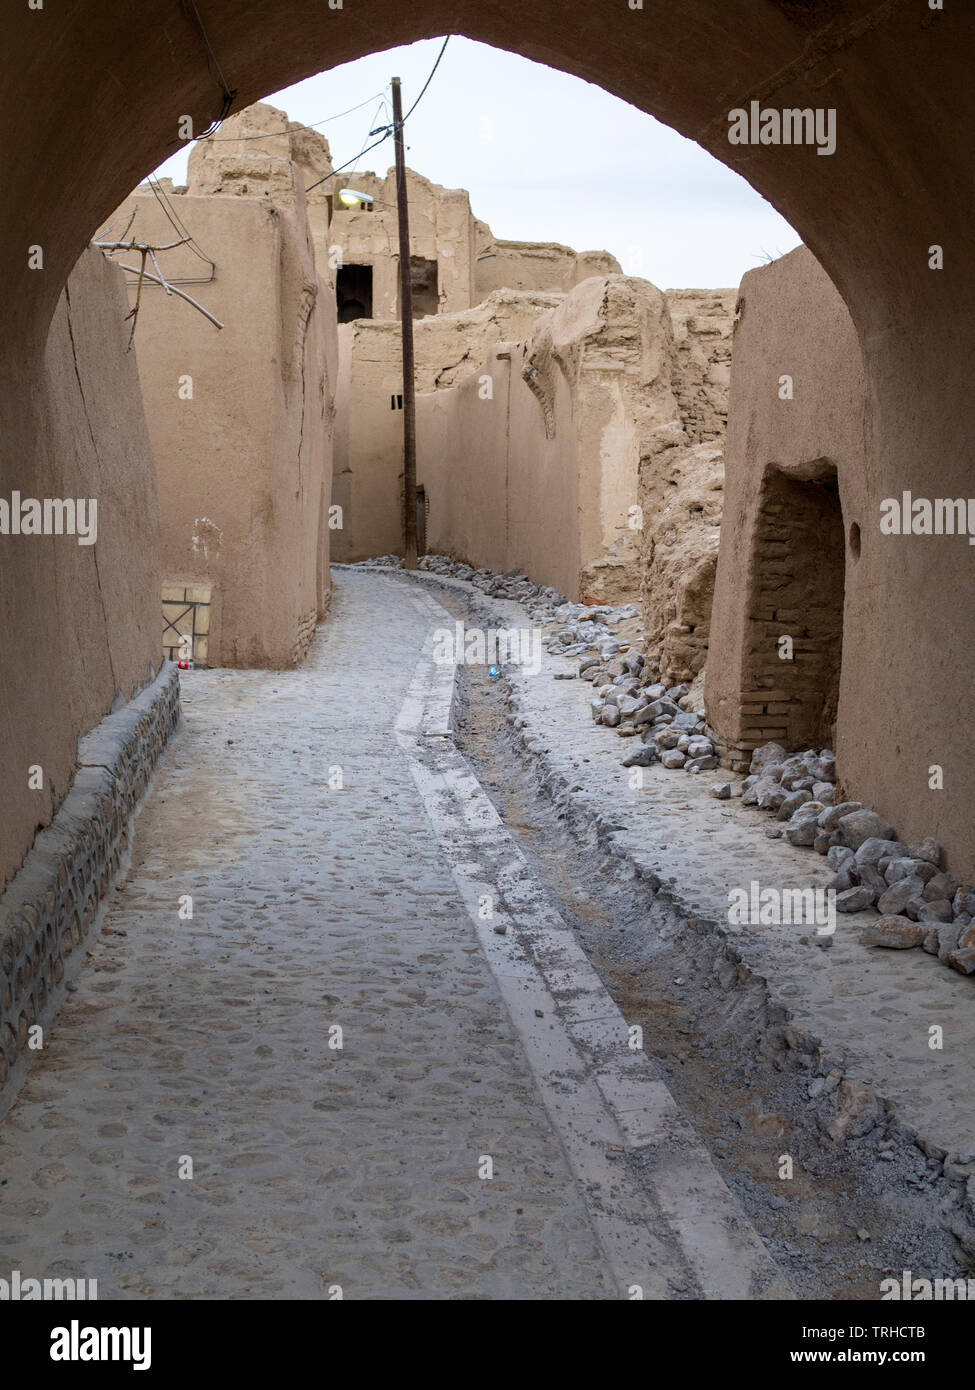 In der Altstadt von lehmziegeln Aqda, einer Stadt in der Wüste außerhalb von Yazd, Iran. Aqda wird derzeit für den Tourismusmarkt wiederhergestellt. Stockfoto